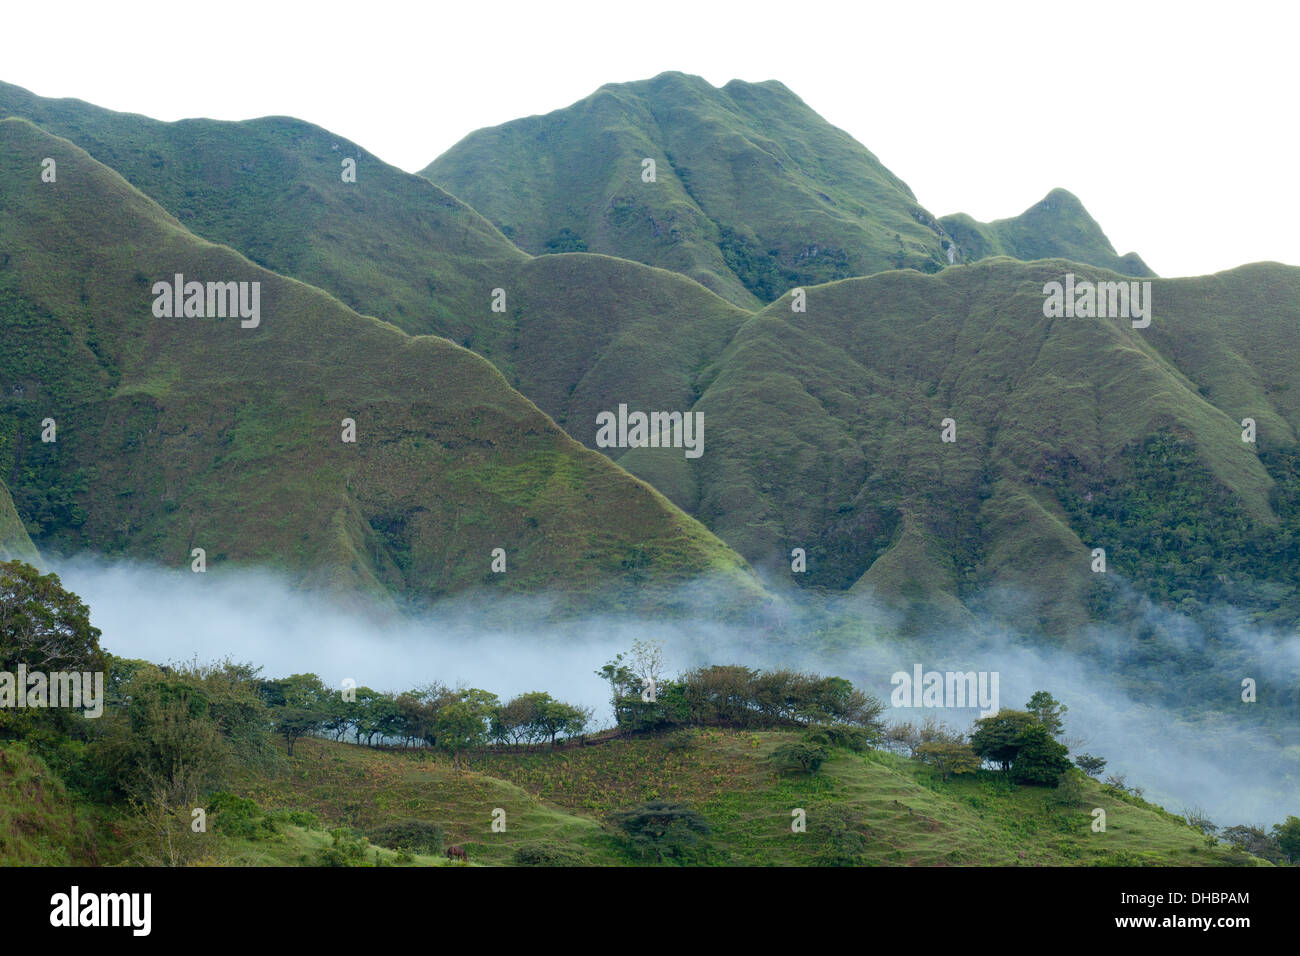 Paysages brumeux au Cerros los Picachos de Llo montagnes, Cordillère centrale, province de Cocle, République du Panama. Banque D'Images